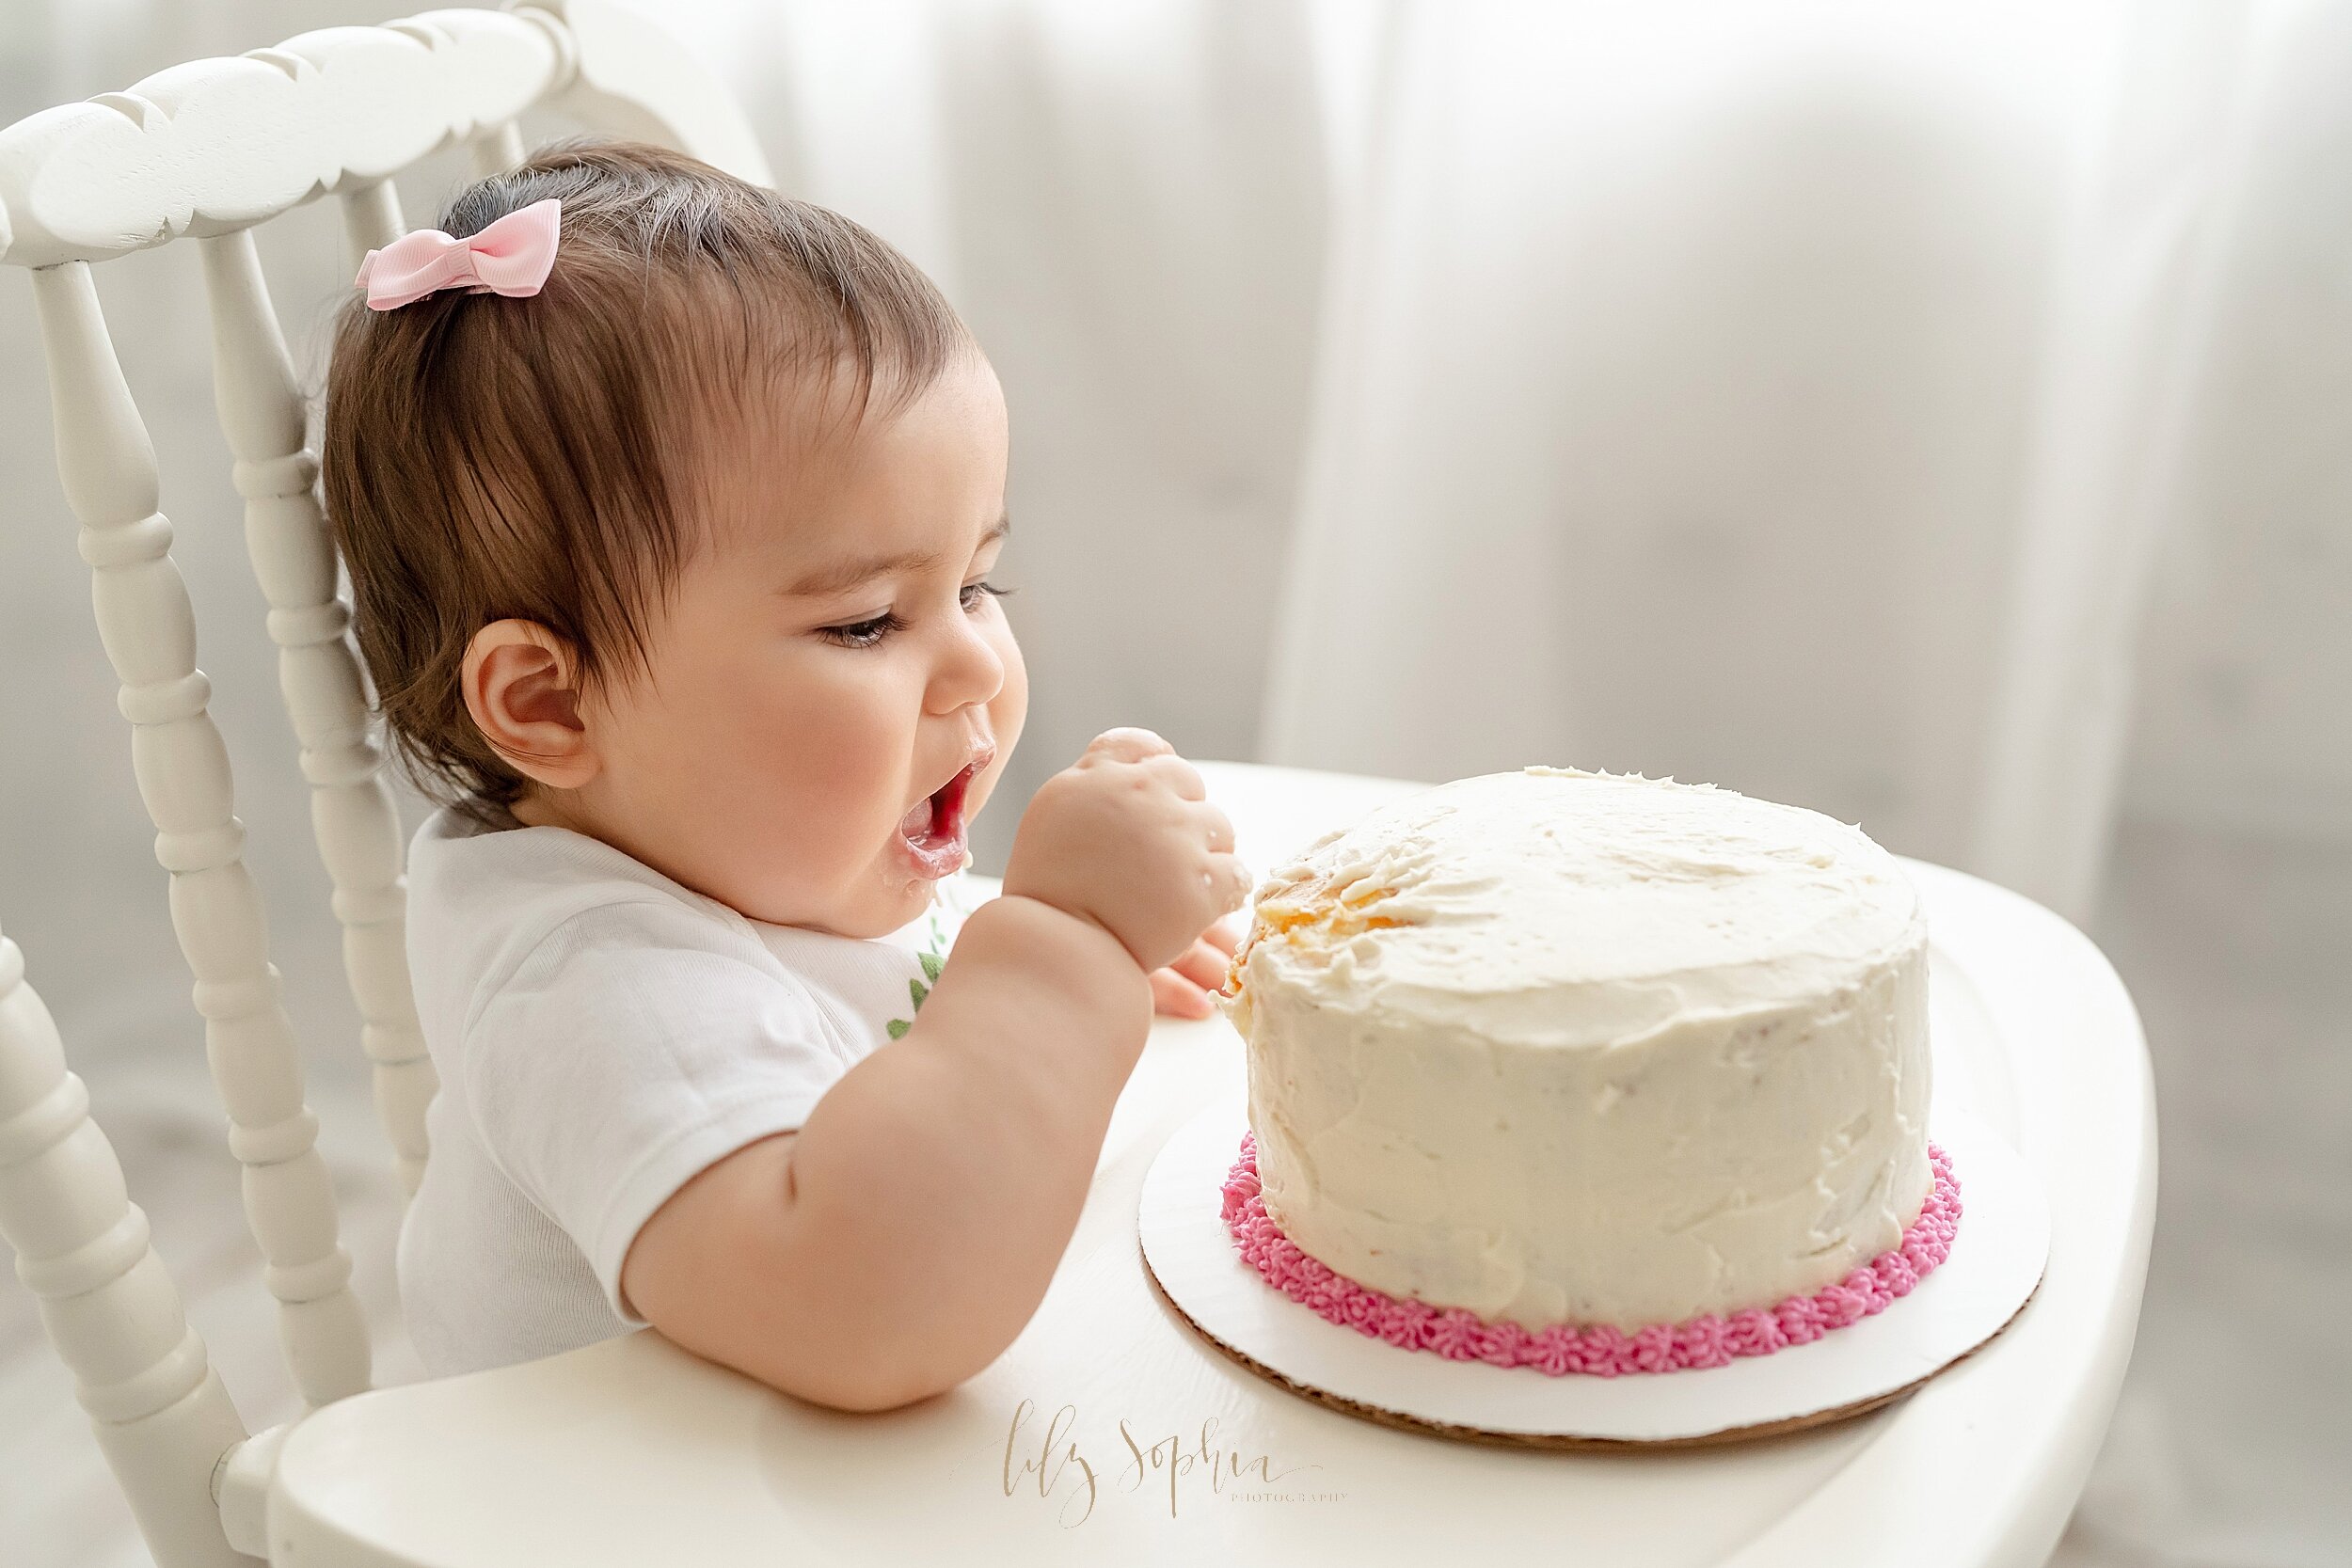 atlanta-georgia-buckhead-brookhaven-midtown-milestone-first-birthday-cake-smash-baby-girl-family-pictures_5638.jpg